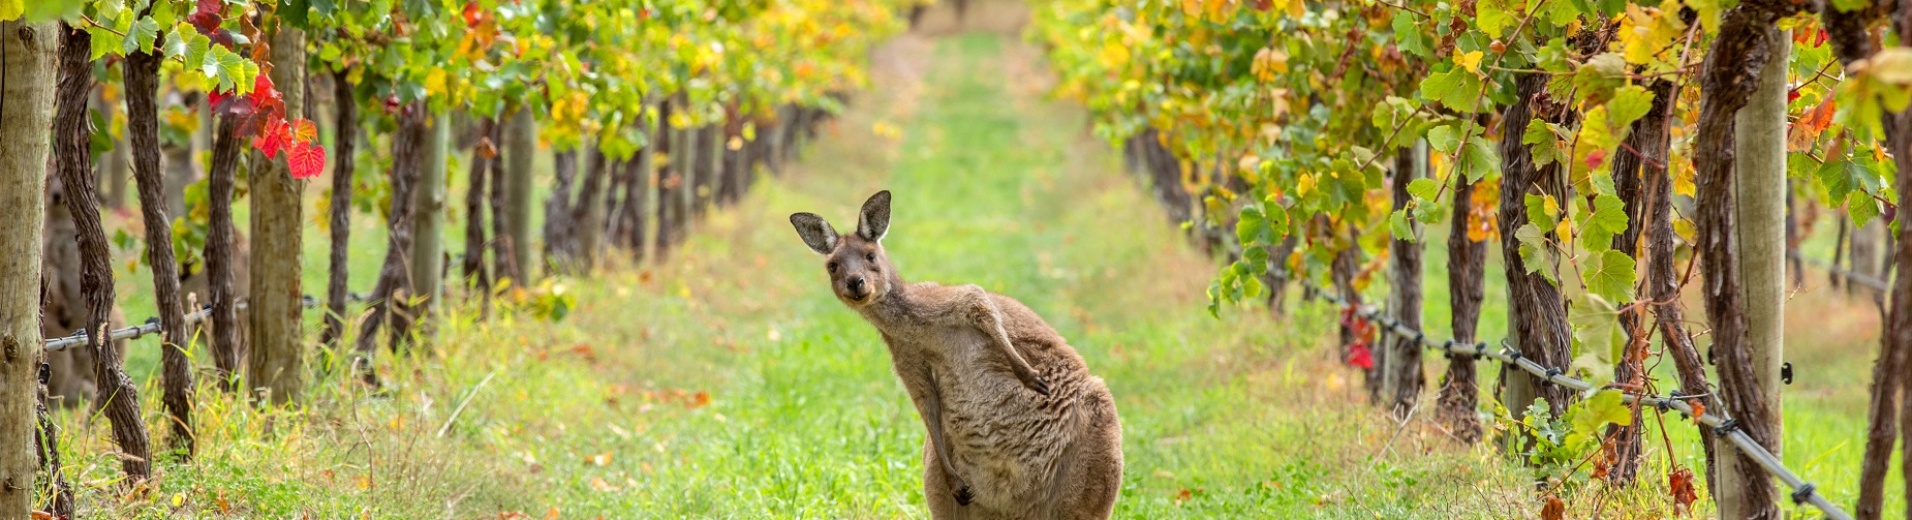 Kangourou au milieu des vignes dans la hunter valley